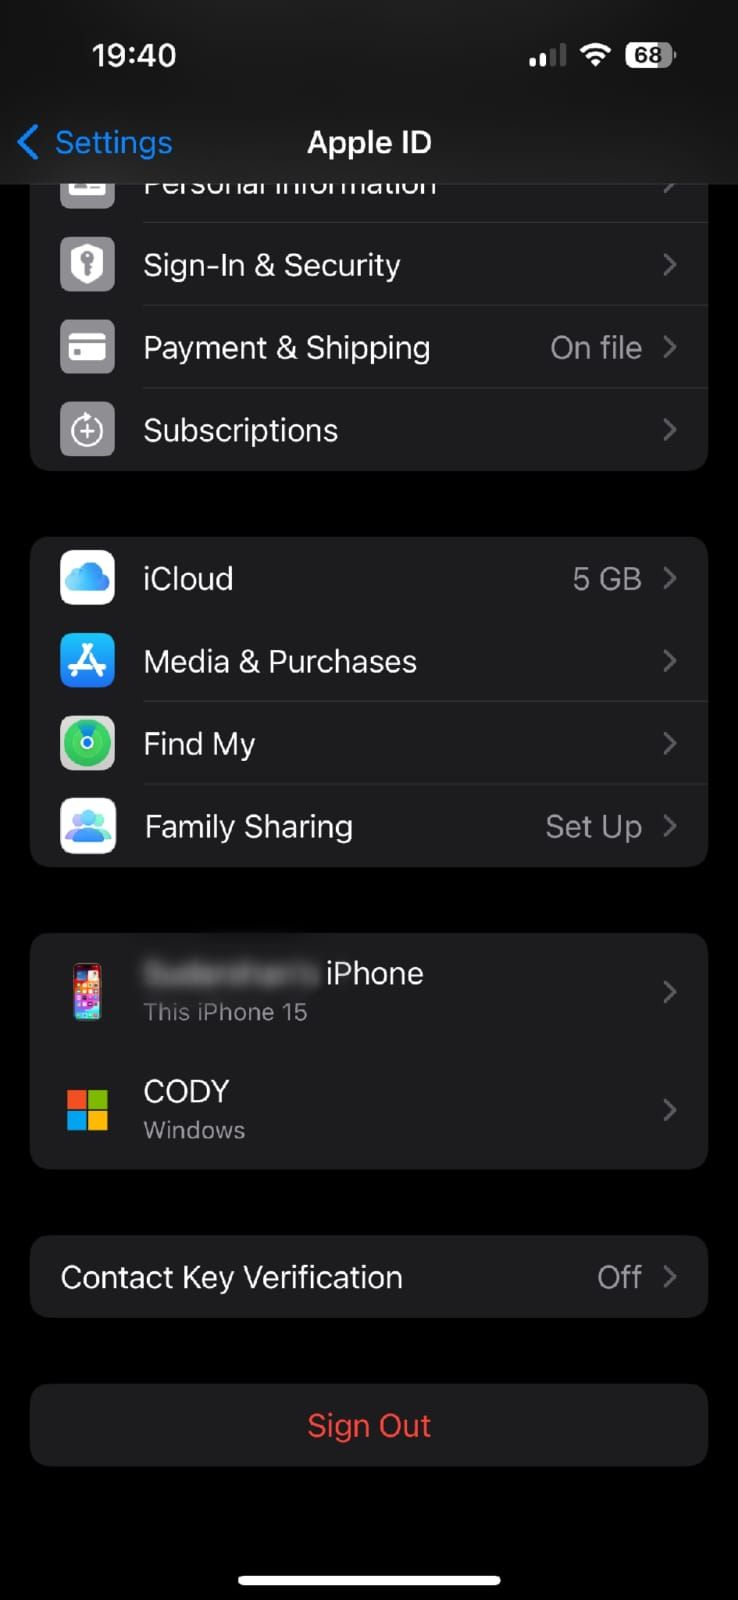 Captura de tela mostrando as configurações do iPhone Apple ID